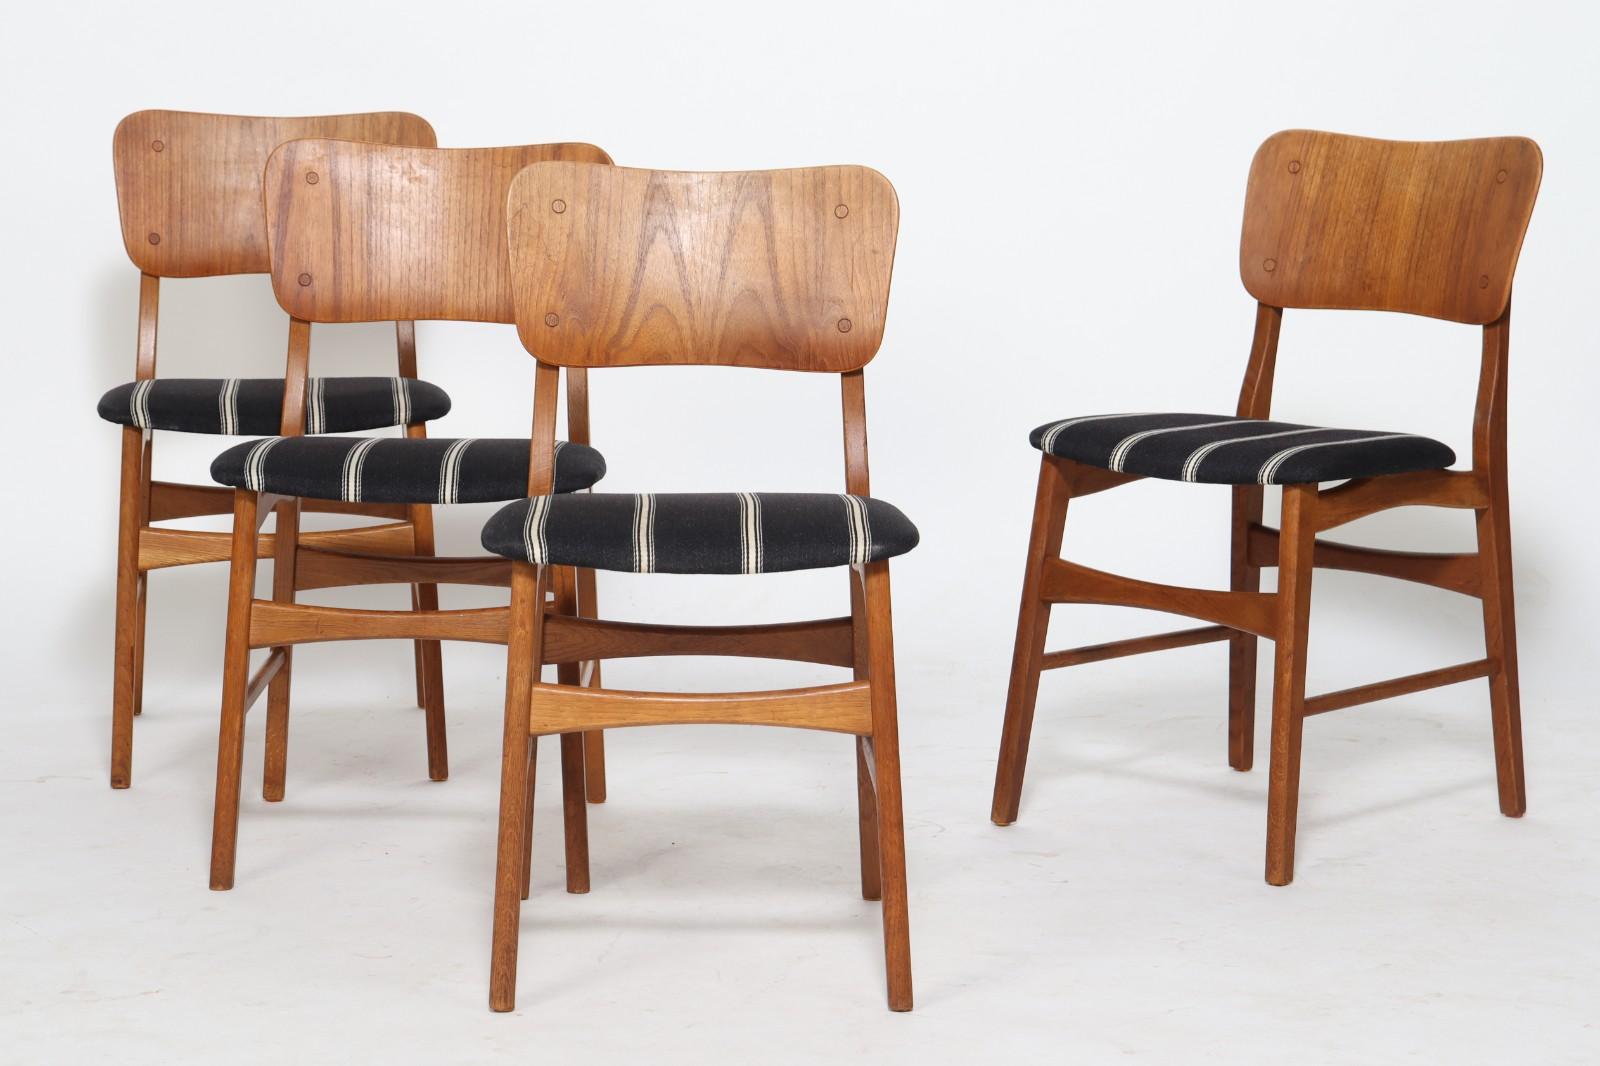 Ib Kofod Larsen. Quatre chaises avec dossier en teck, structure en chêne, sièges garnis de laine. Traces d'usure. H 80 cm, SH 45 cm 